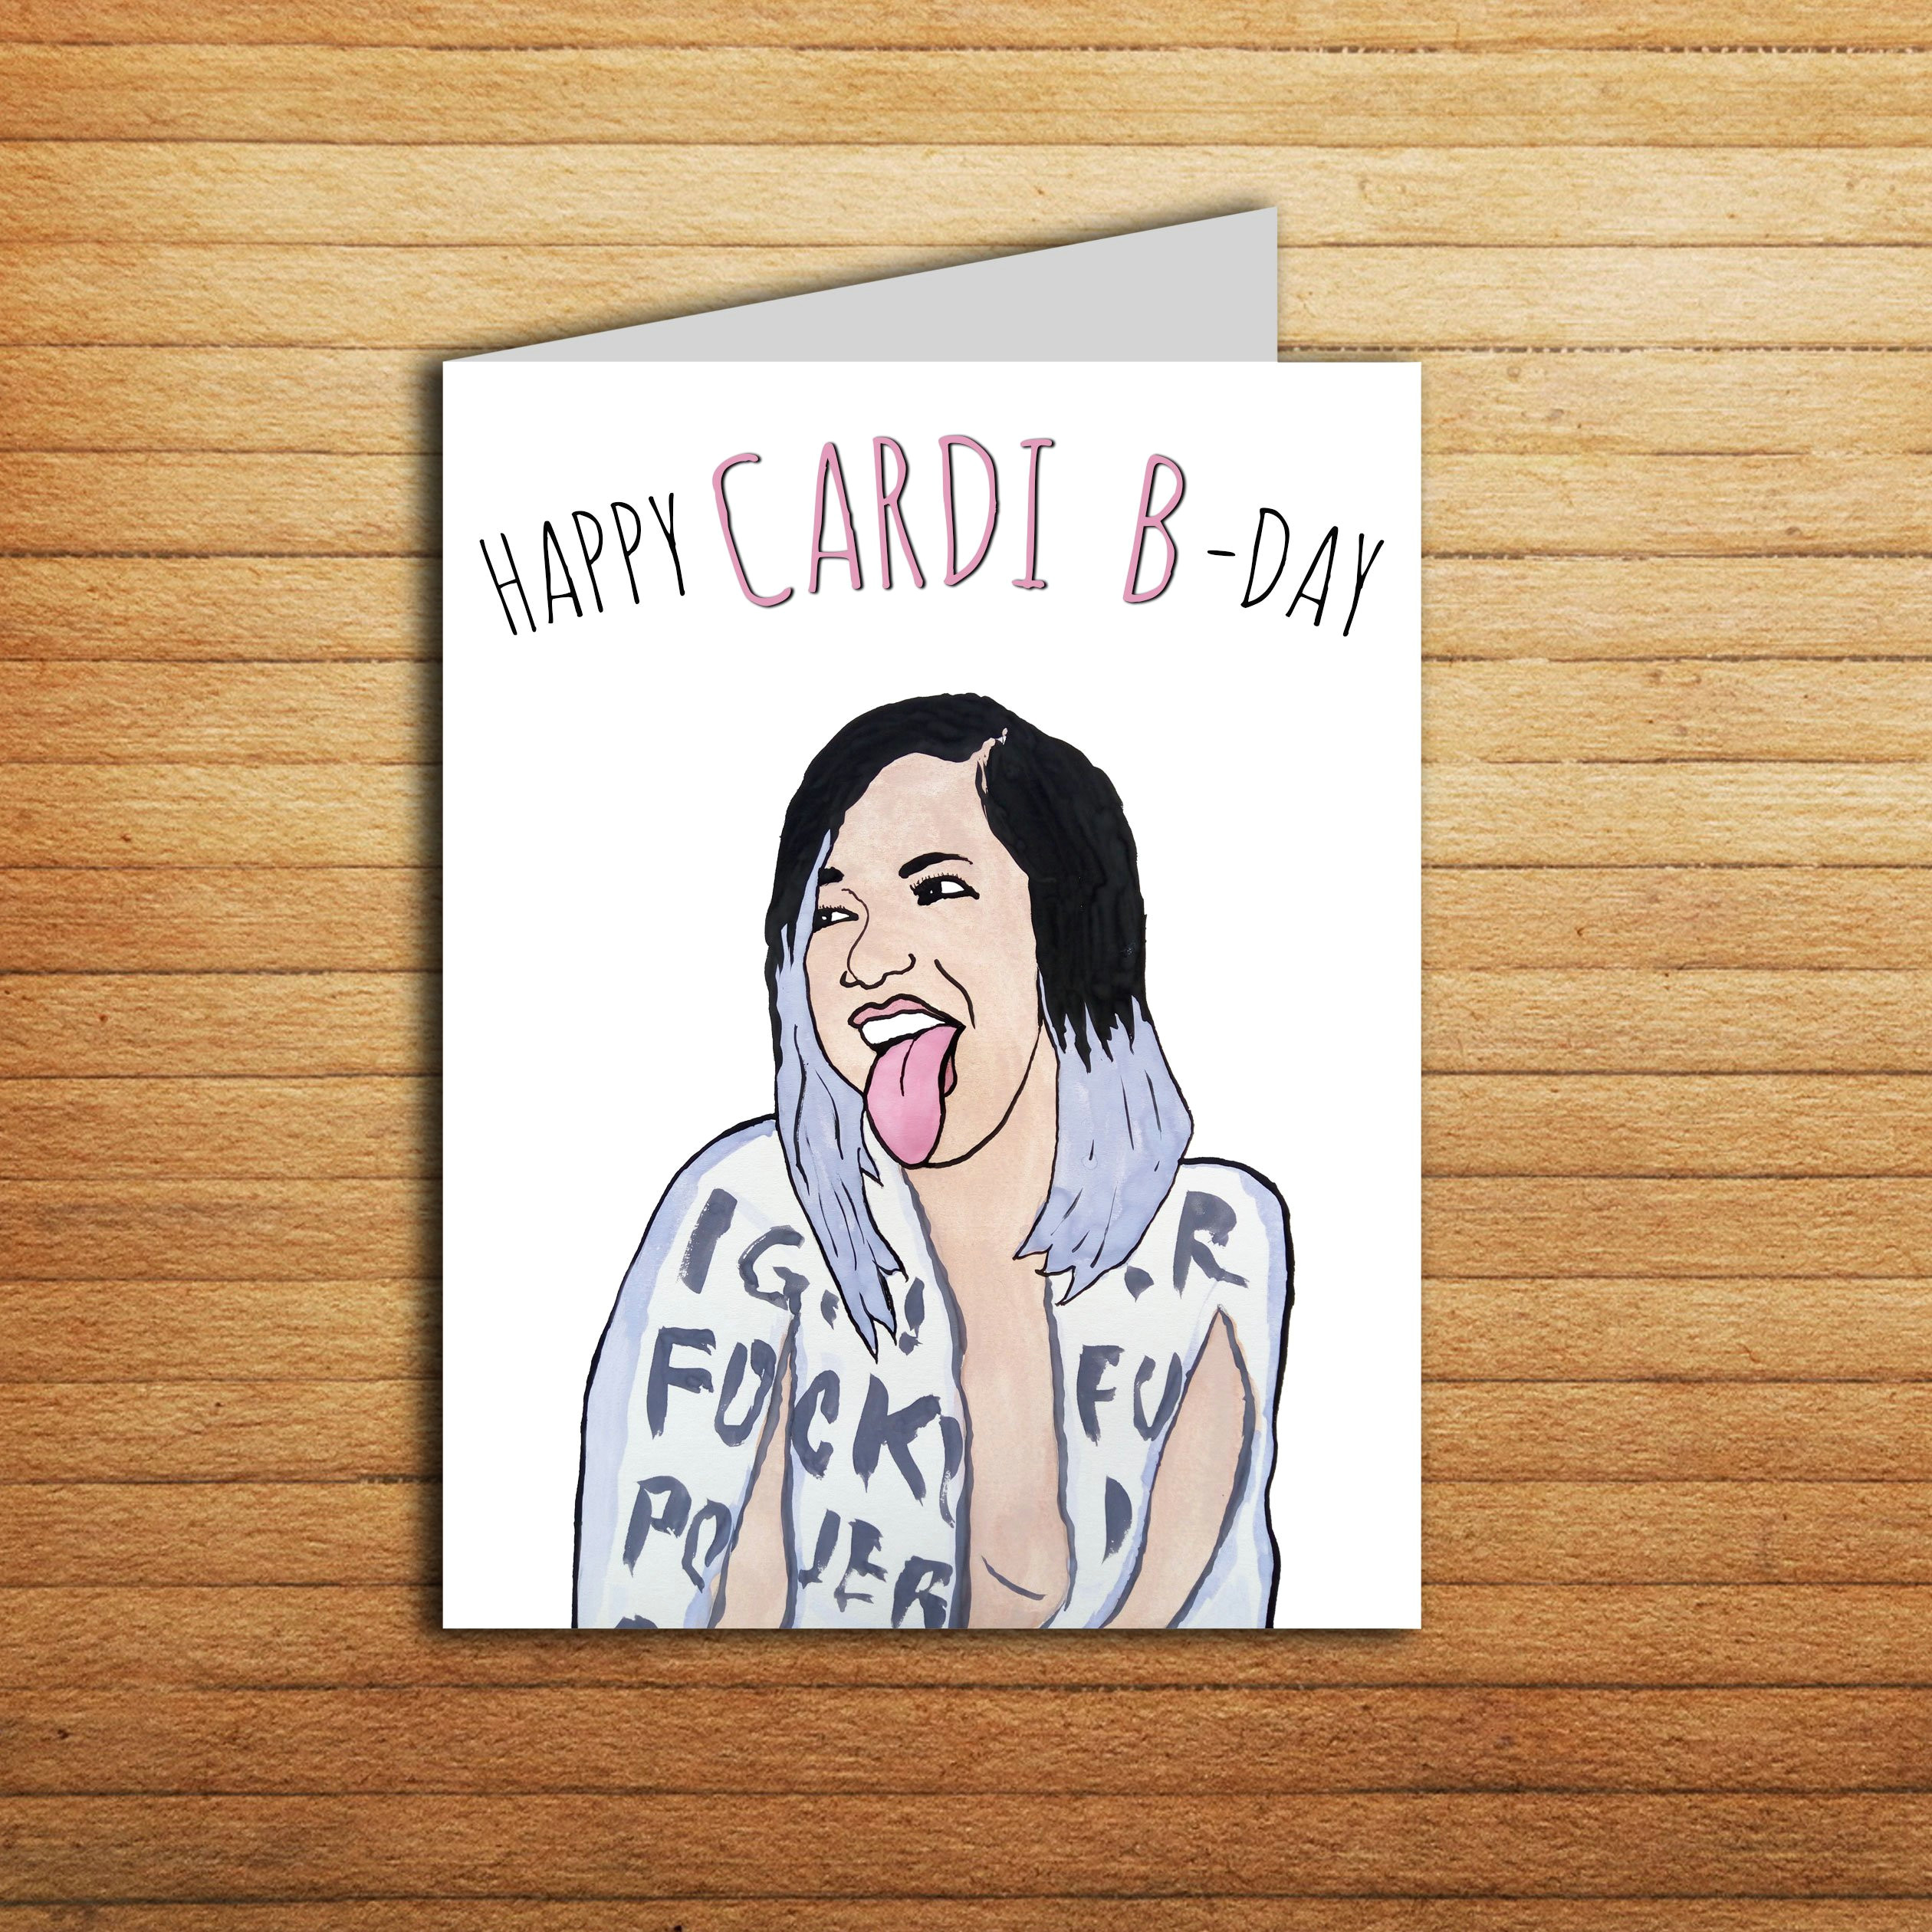 Cardi B Cartoon Drawing Cardi B Card Funny Birthday Card Printable Happy Cardi B Day Etsy